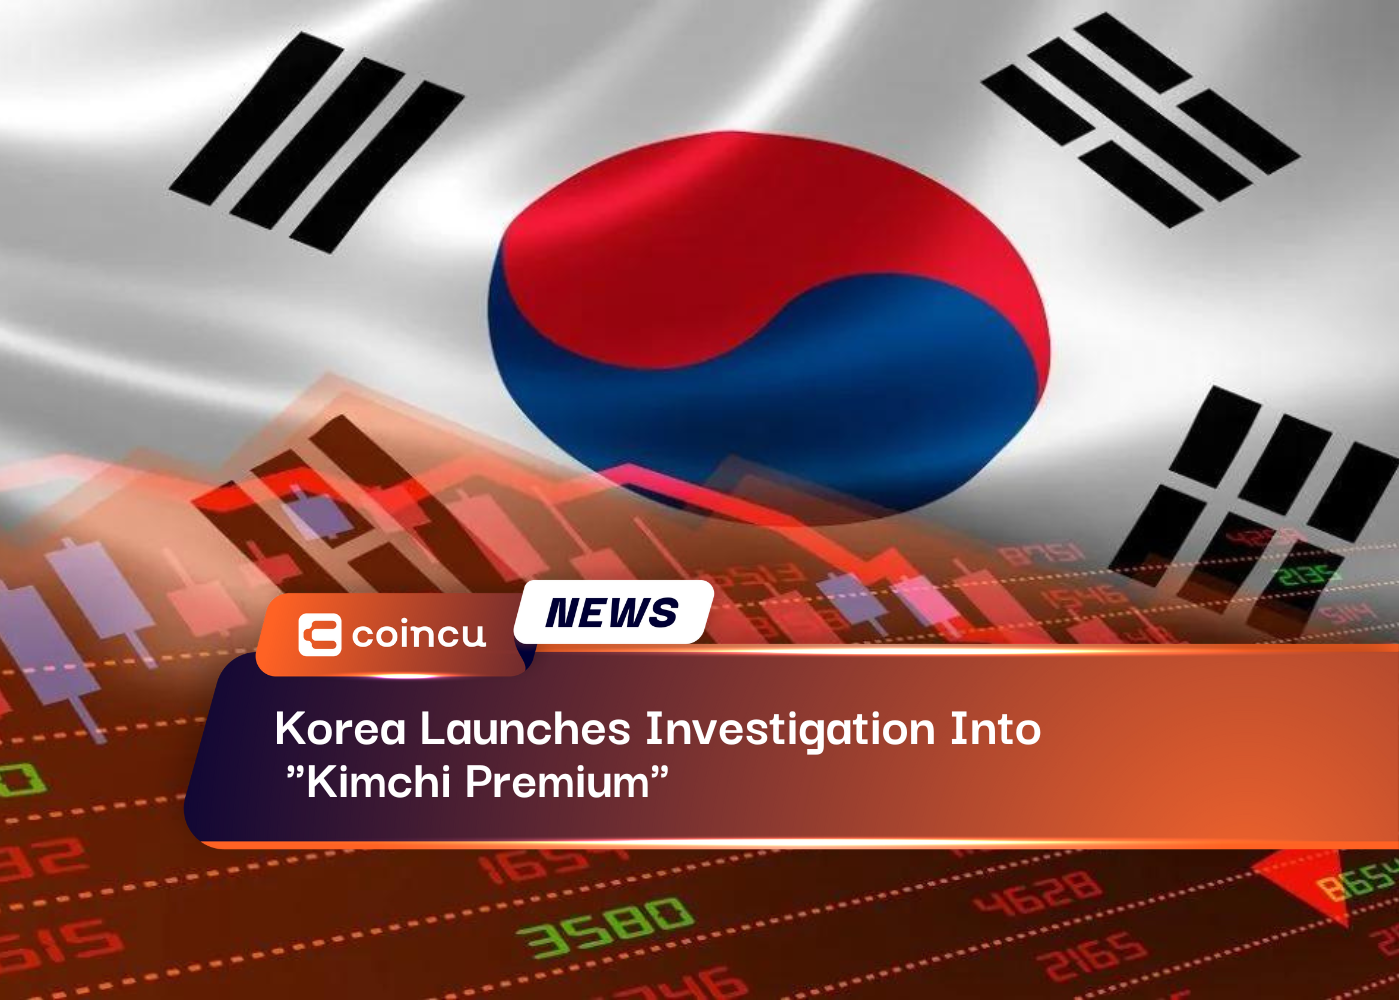 Kimchi Premium